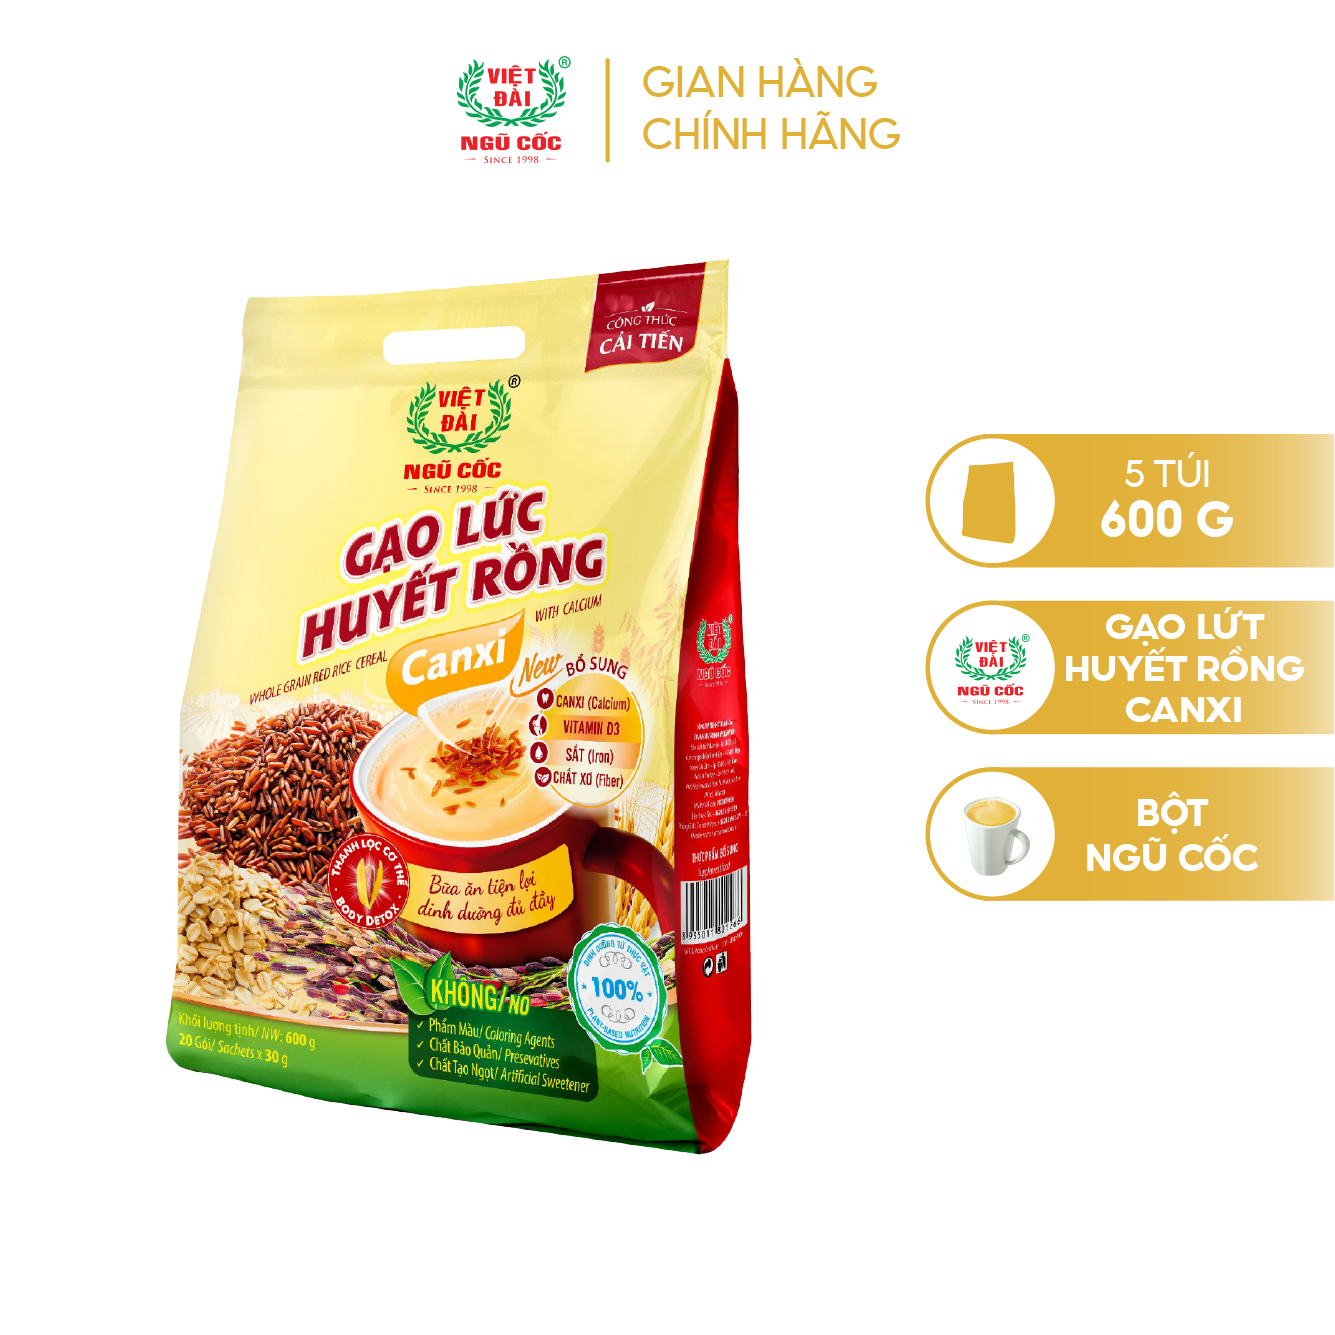 Combo 5 sản phẩm Bột ngũ cốc Gạo lức huyết rồng Canxi Việt Đài túi 600g